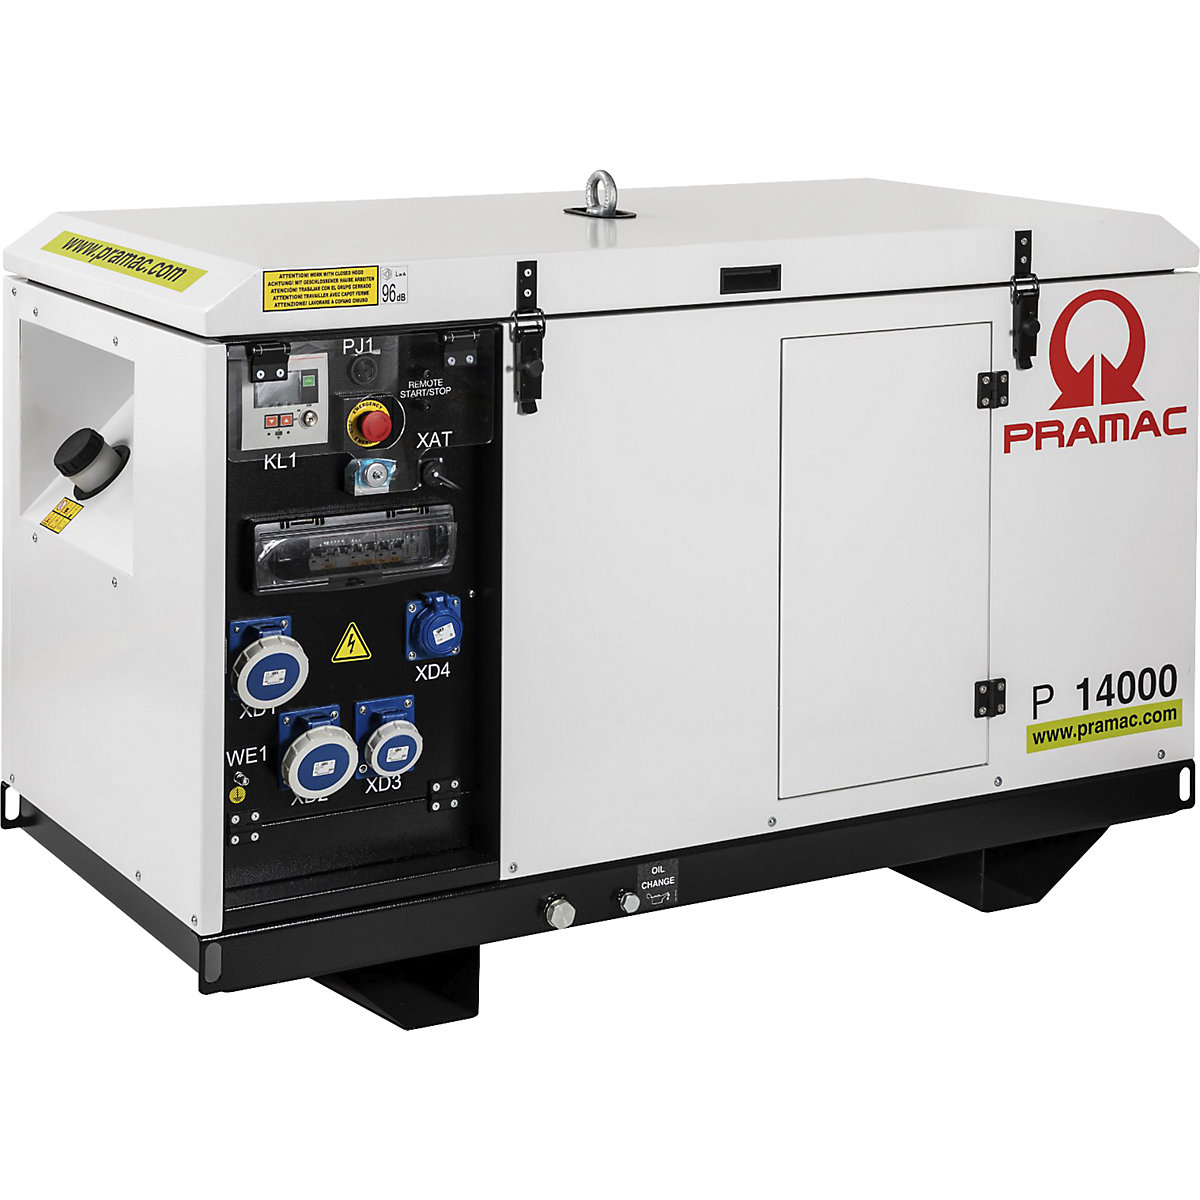 P series power generator, diesel, 400/230 V - Pramac